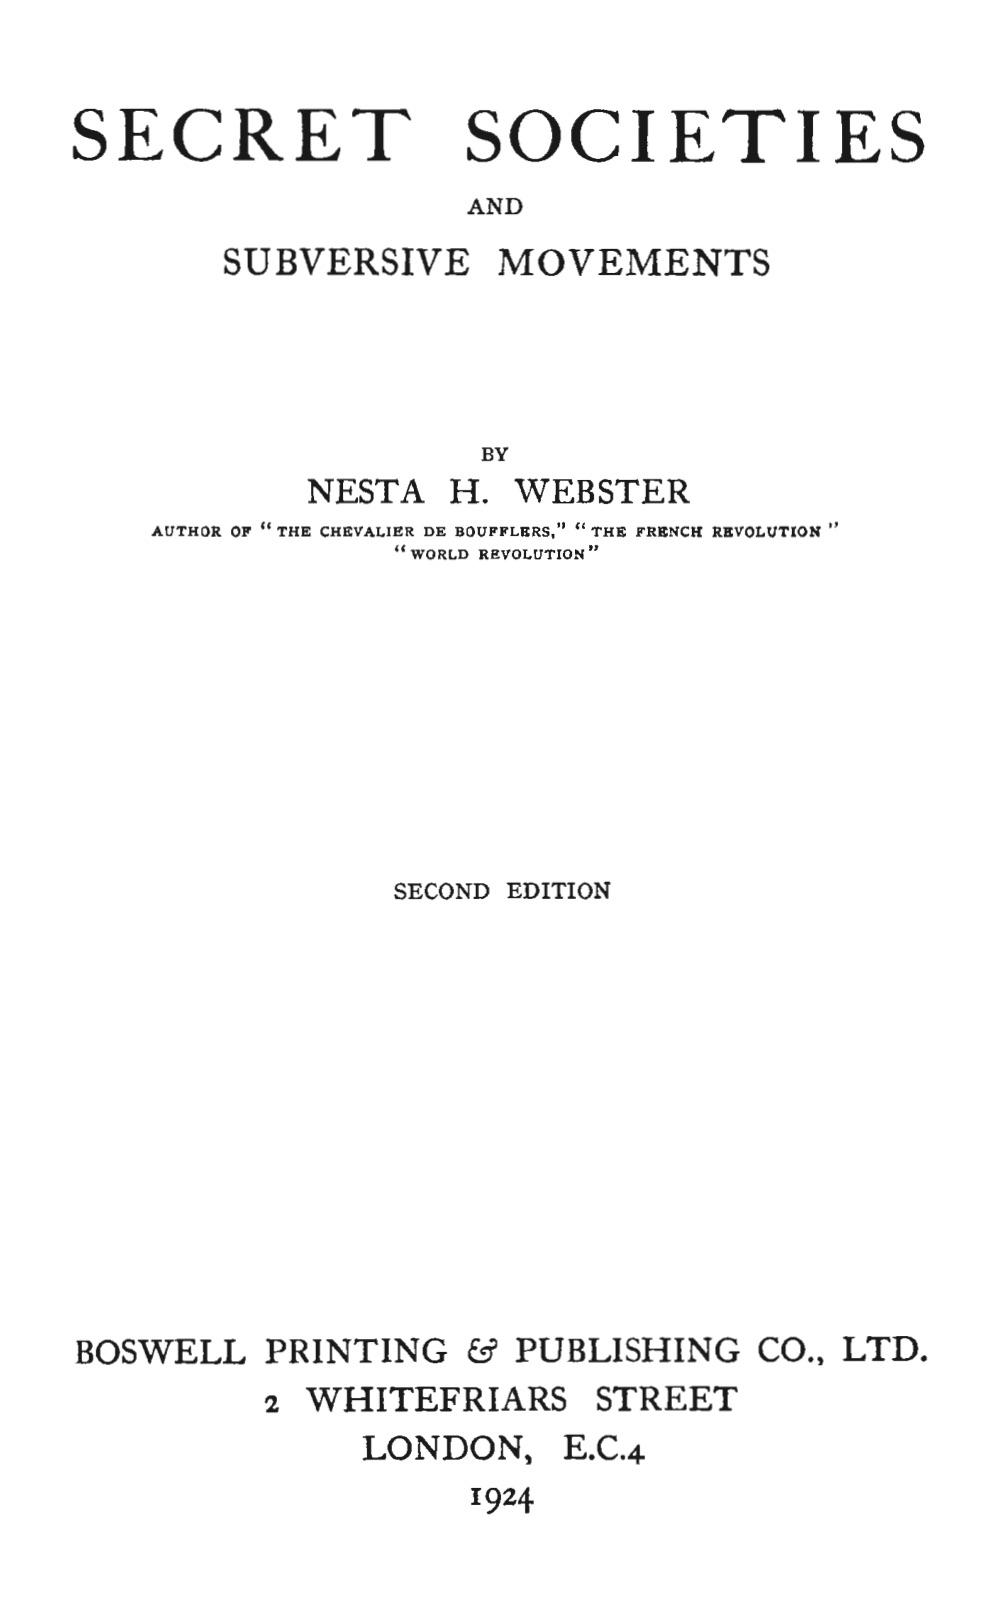 Secret Societies and Subversive Movements (1924) by Nesta Helen Webster